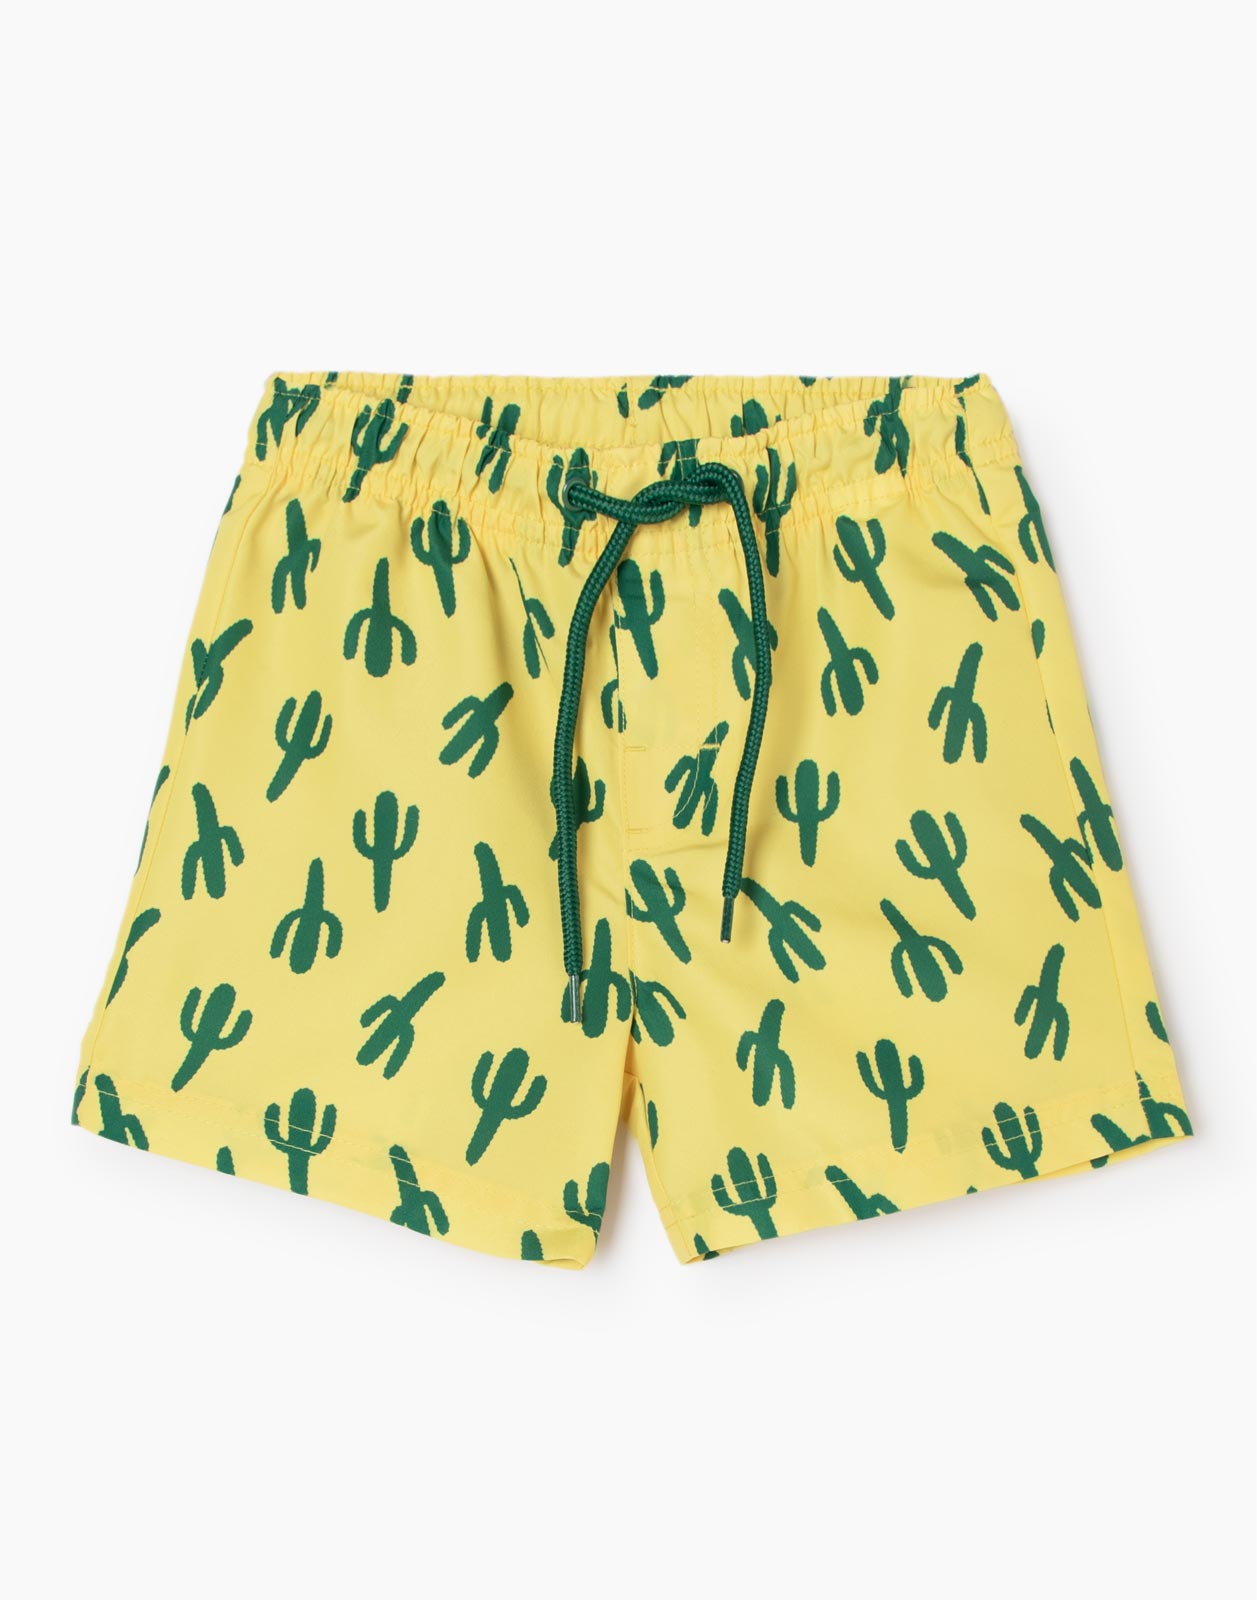 Жёлтые пляжные шорты с кактусами для мальчика р.104